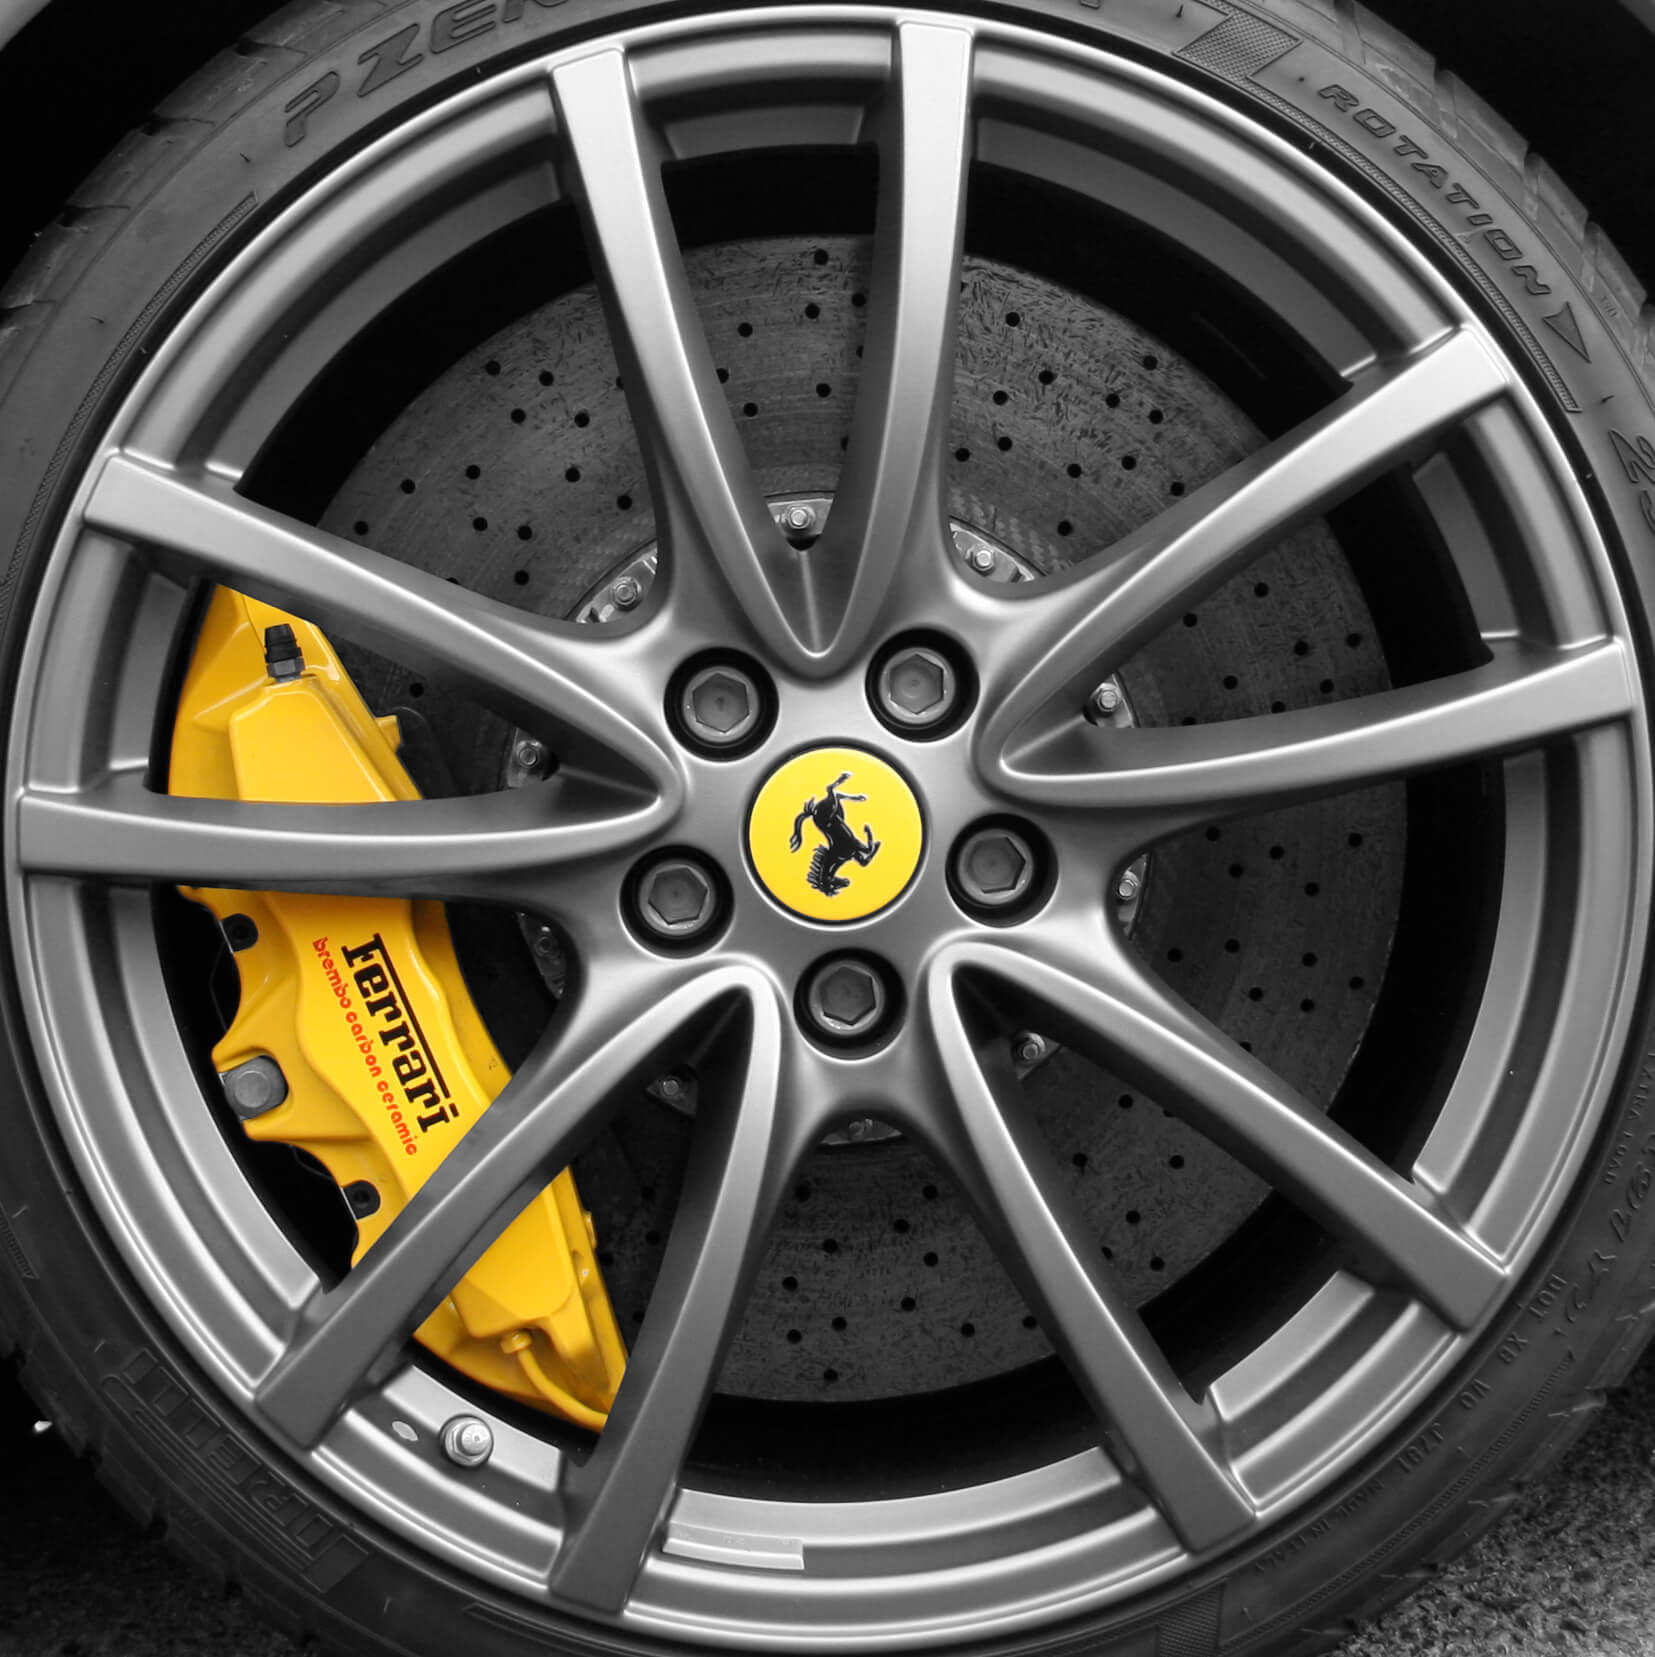 Ferrari_F430_Scuderia_wheel.jpg